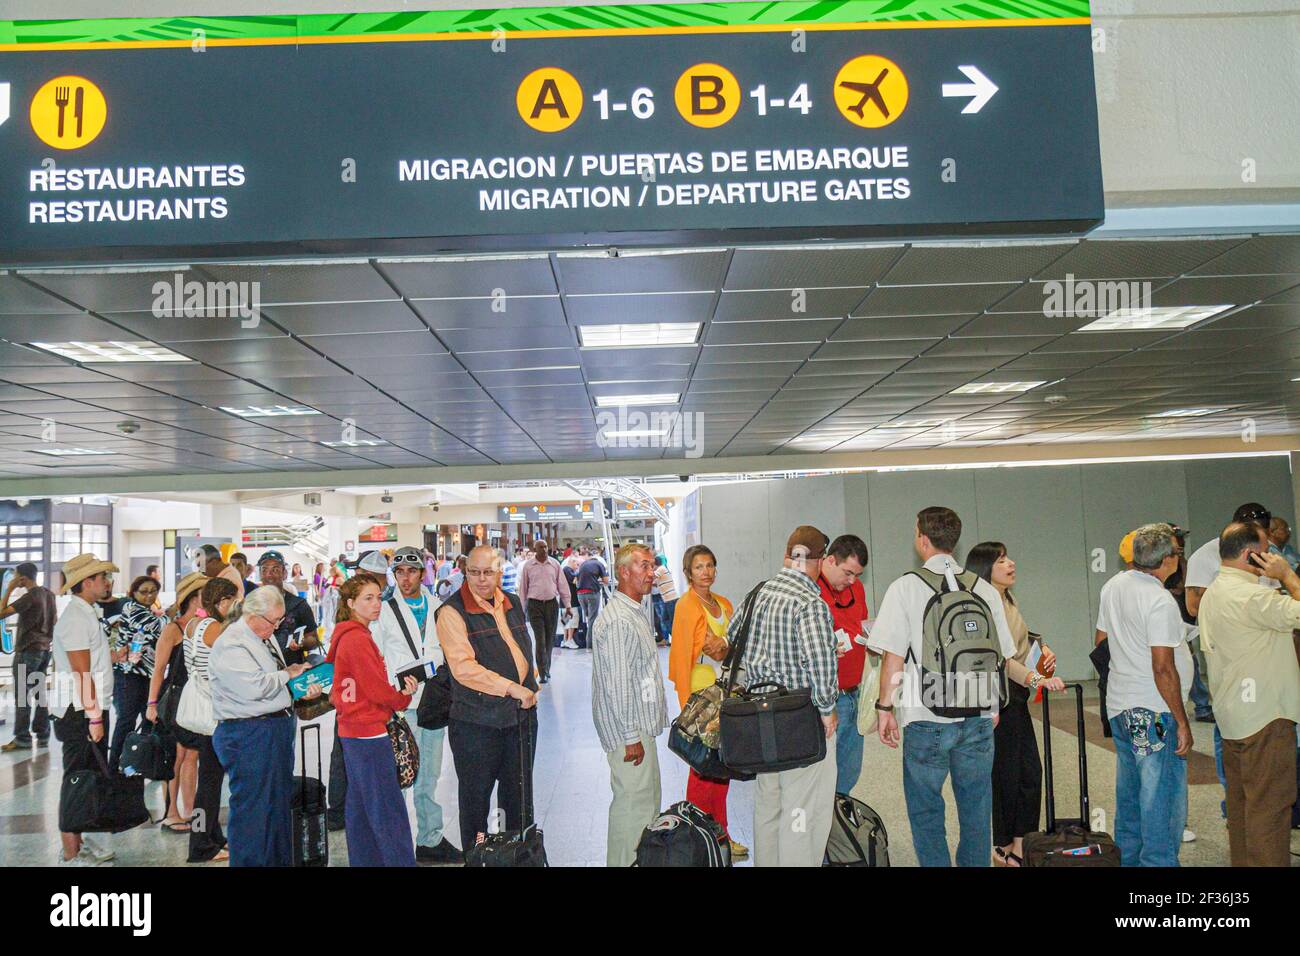 République dominicaine de Saint-Domingue, aéroport international de Las Américas SDQ, ligne de départ de migration file d'attente voyageurs, hommes hispaniques femmes, Banque D'Images